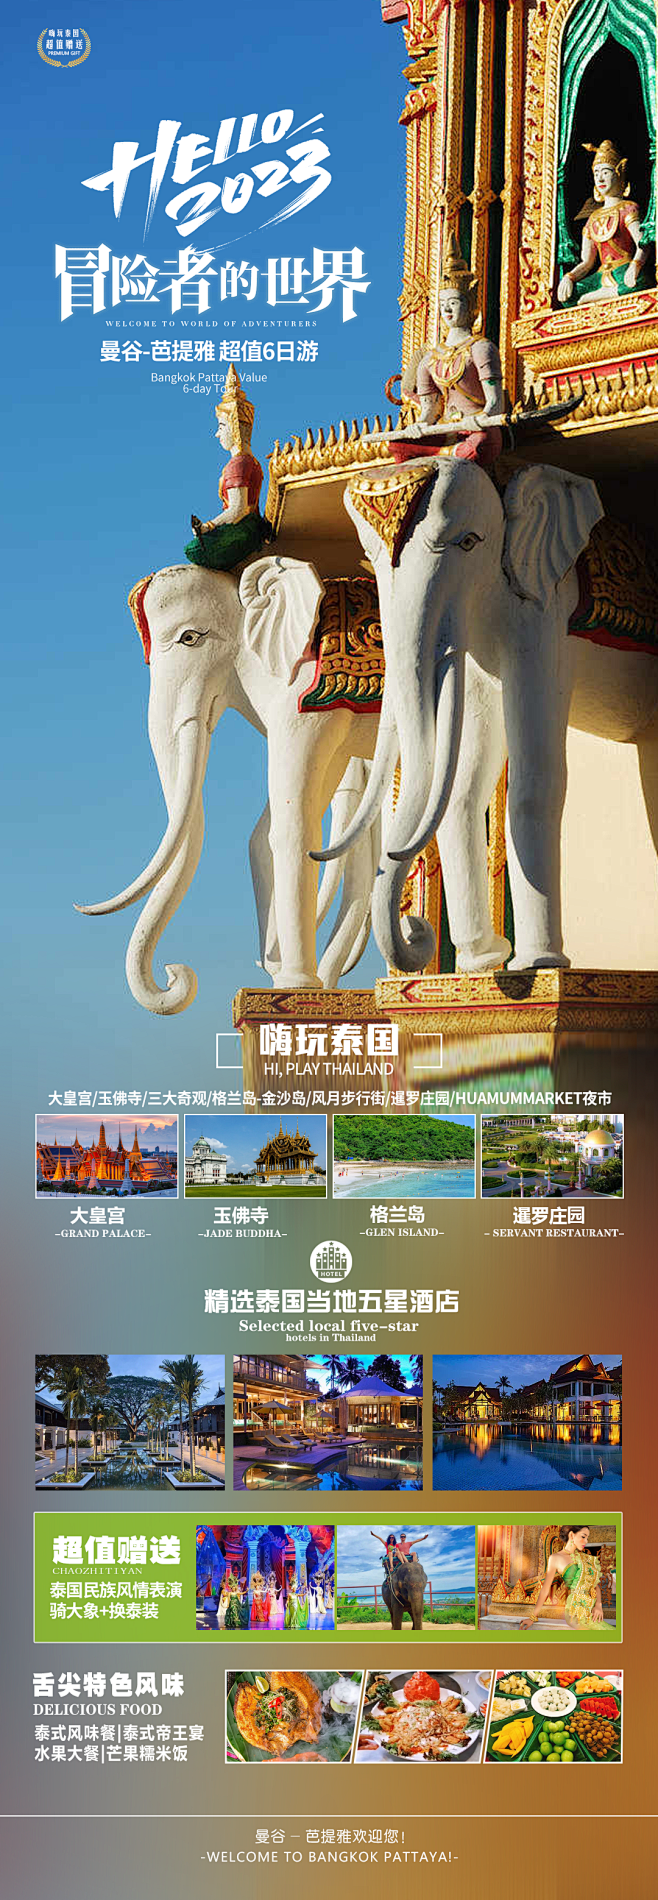 泰国旅游海报-志设网-zs9.com